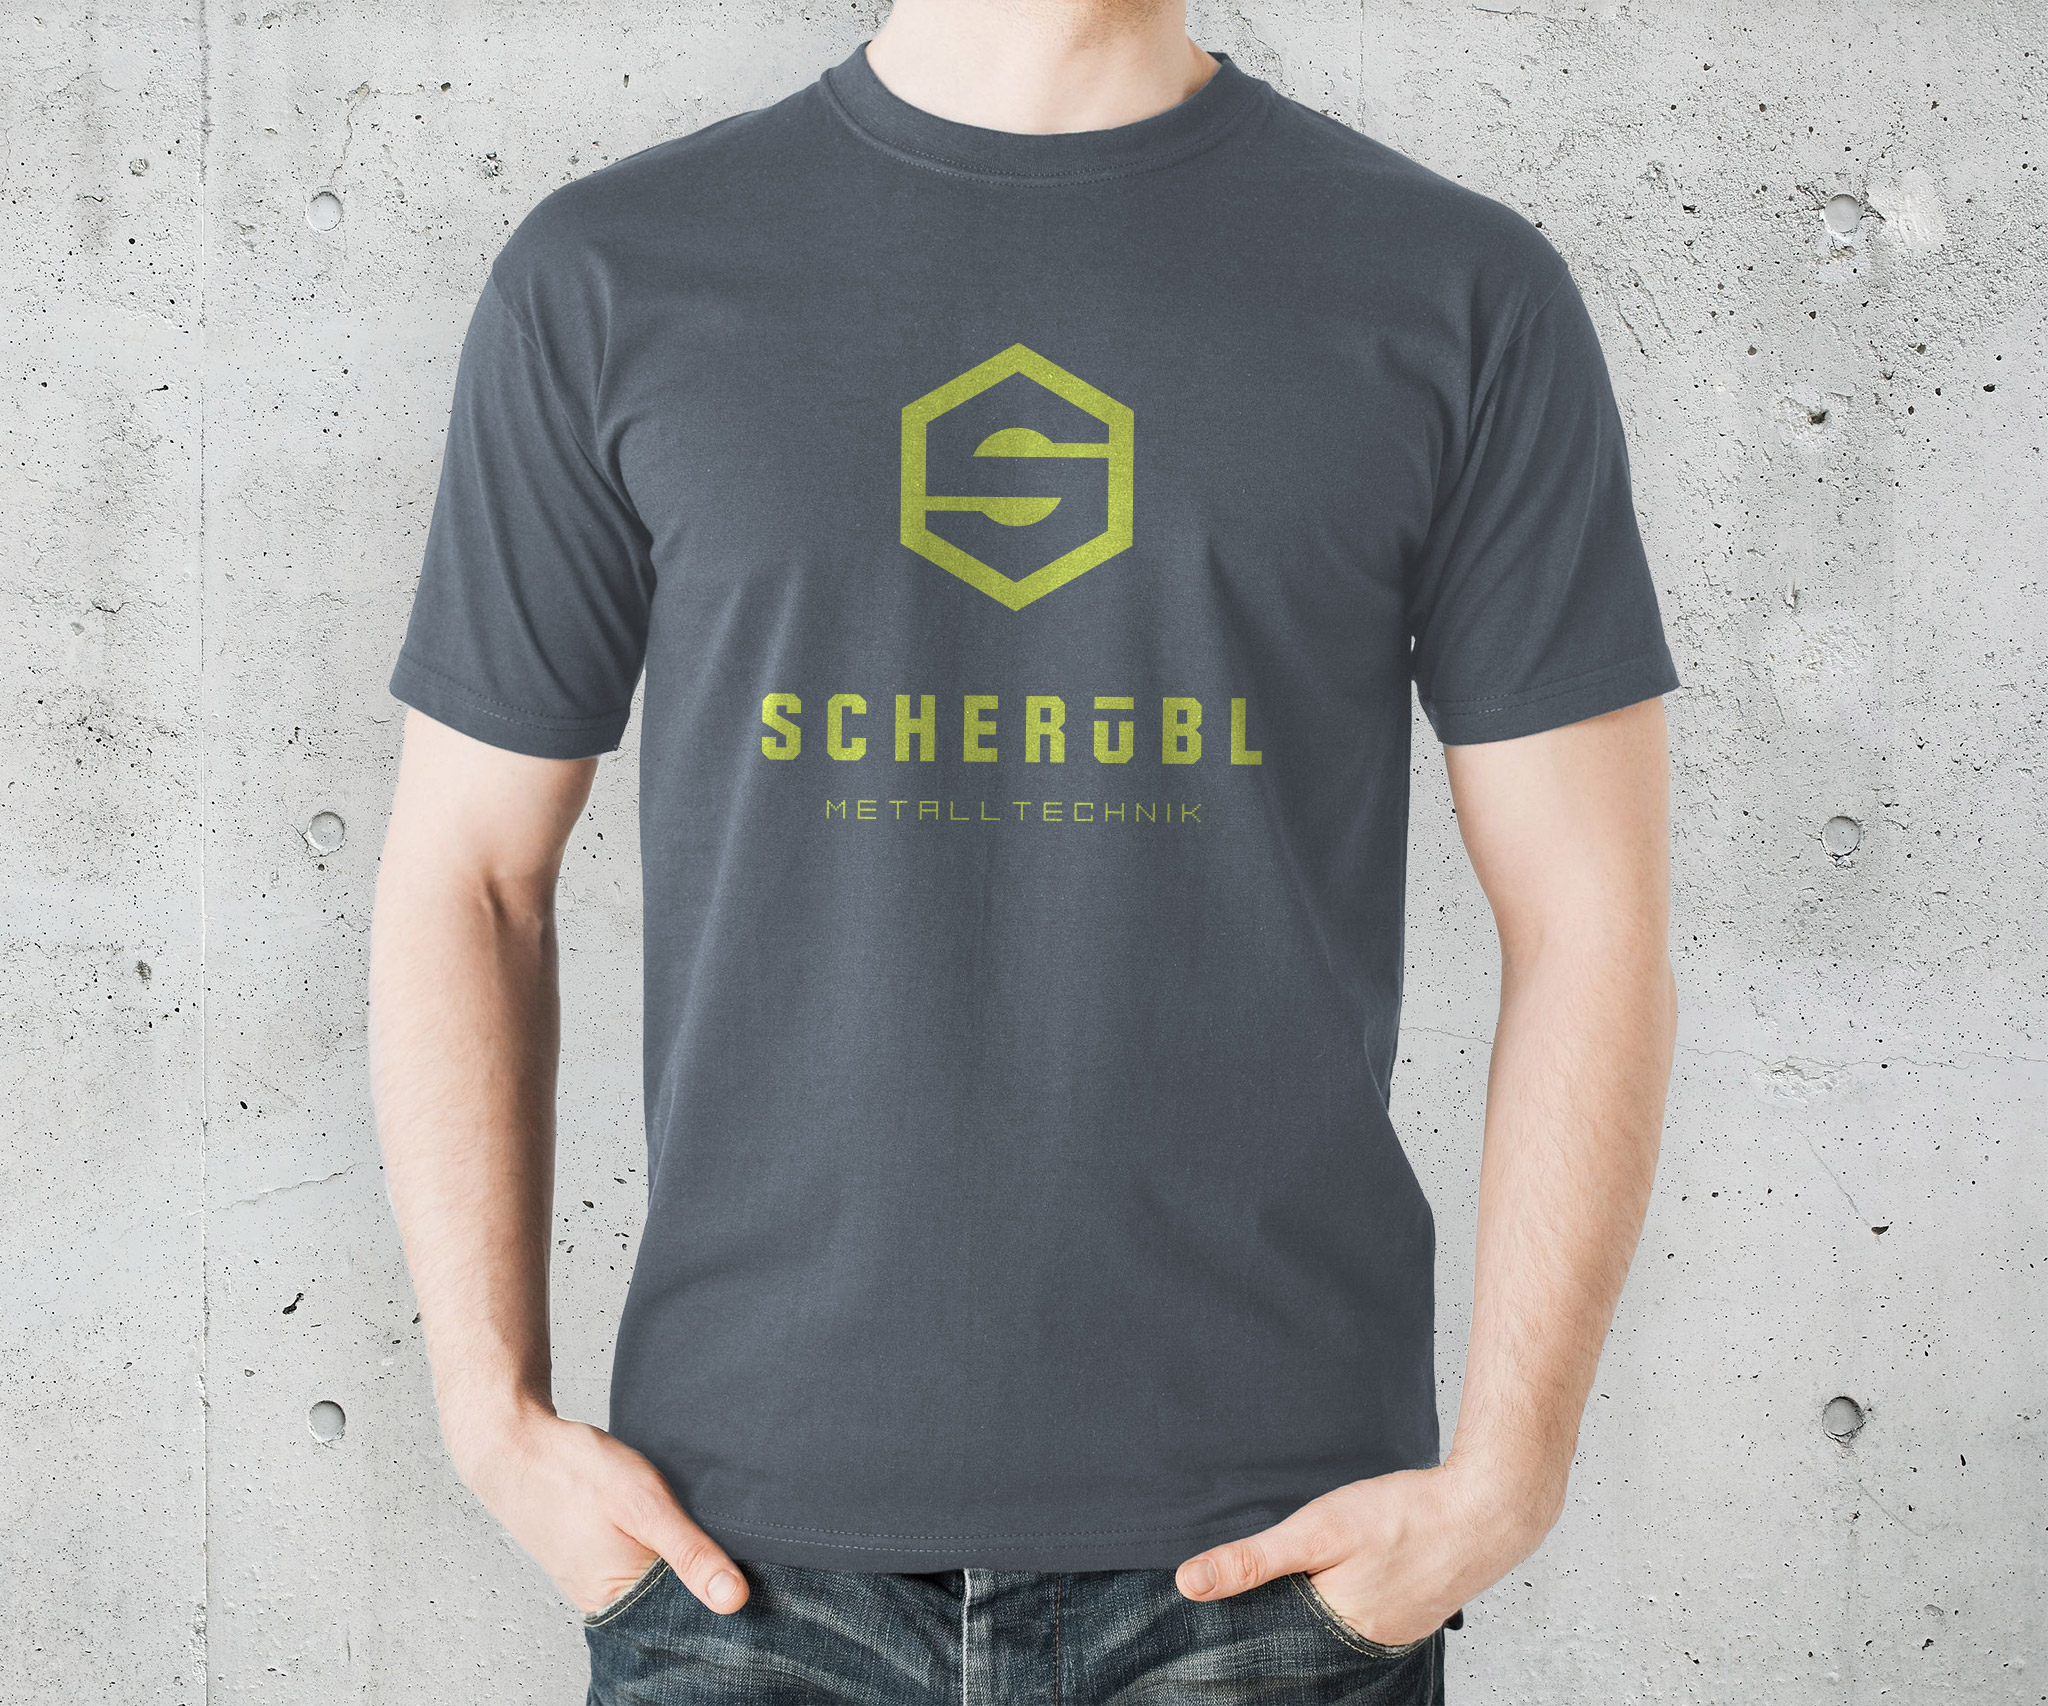 T-Shirt Design for Alexander Scherübl Metalltechnik